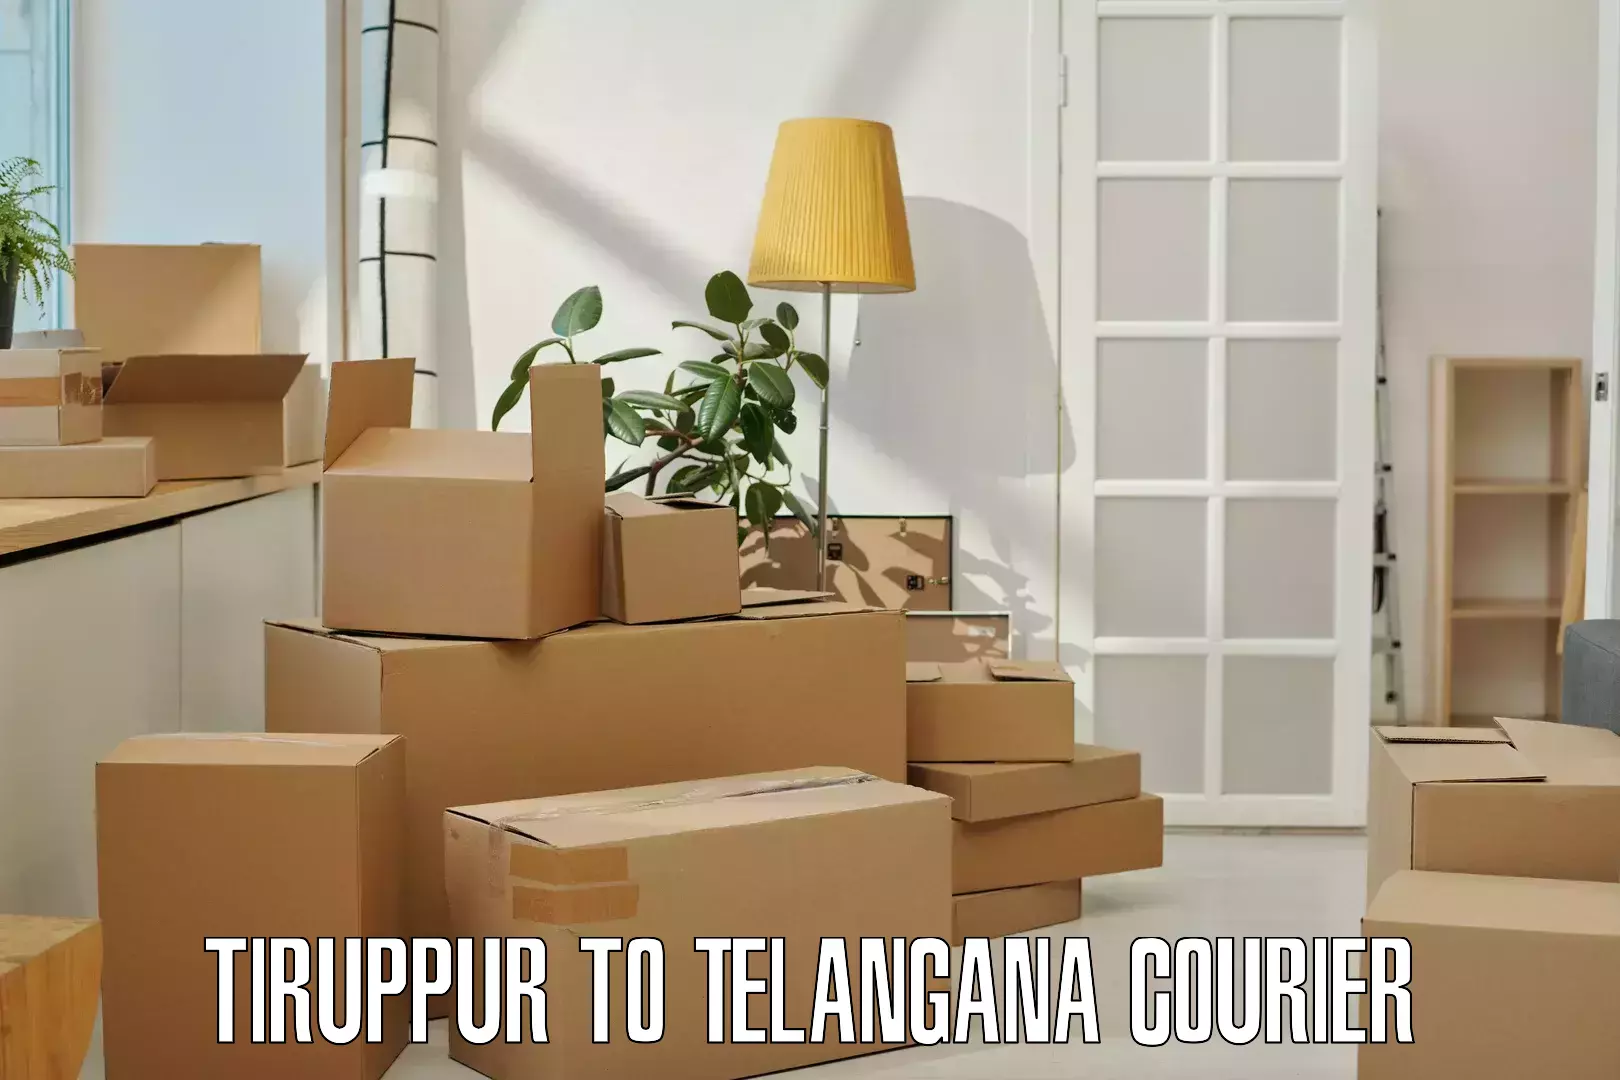 Premium courier services Tiruppur to Telangana